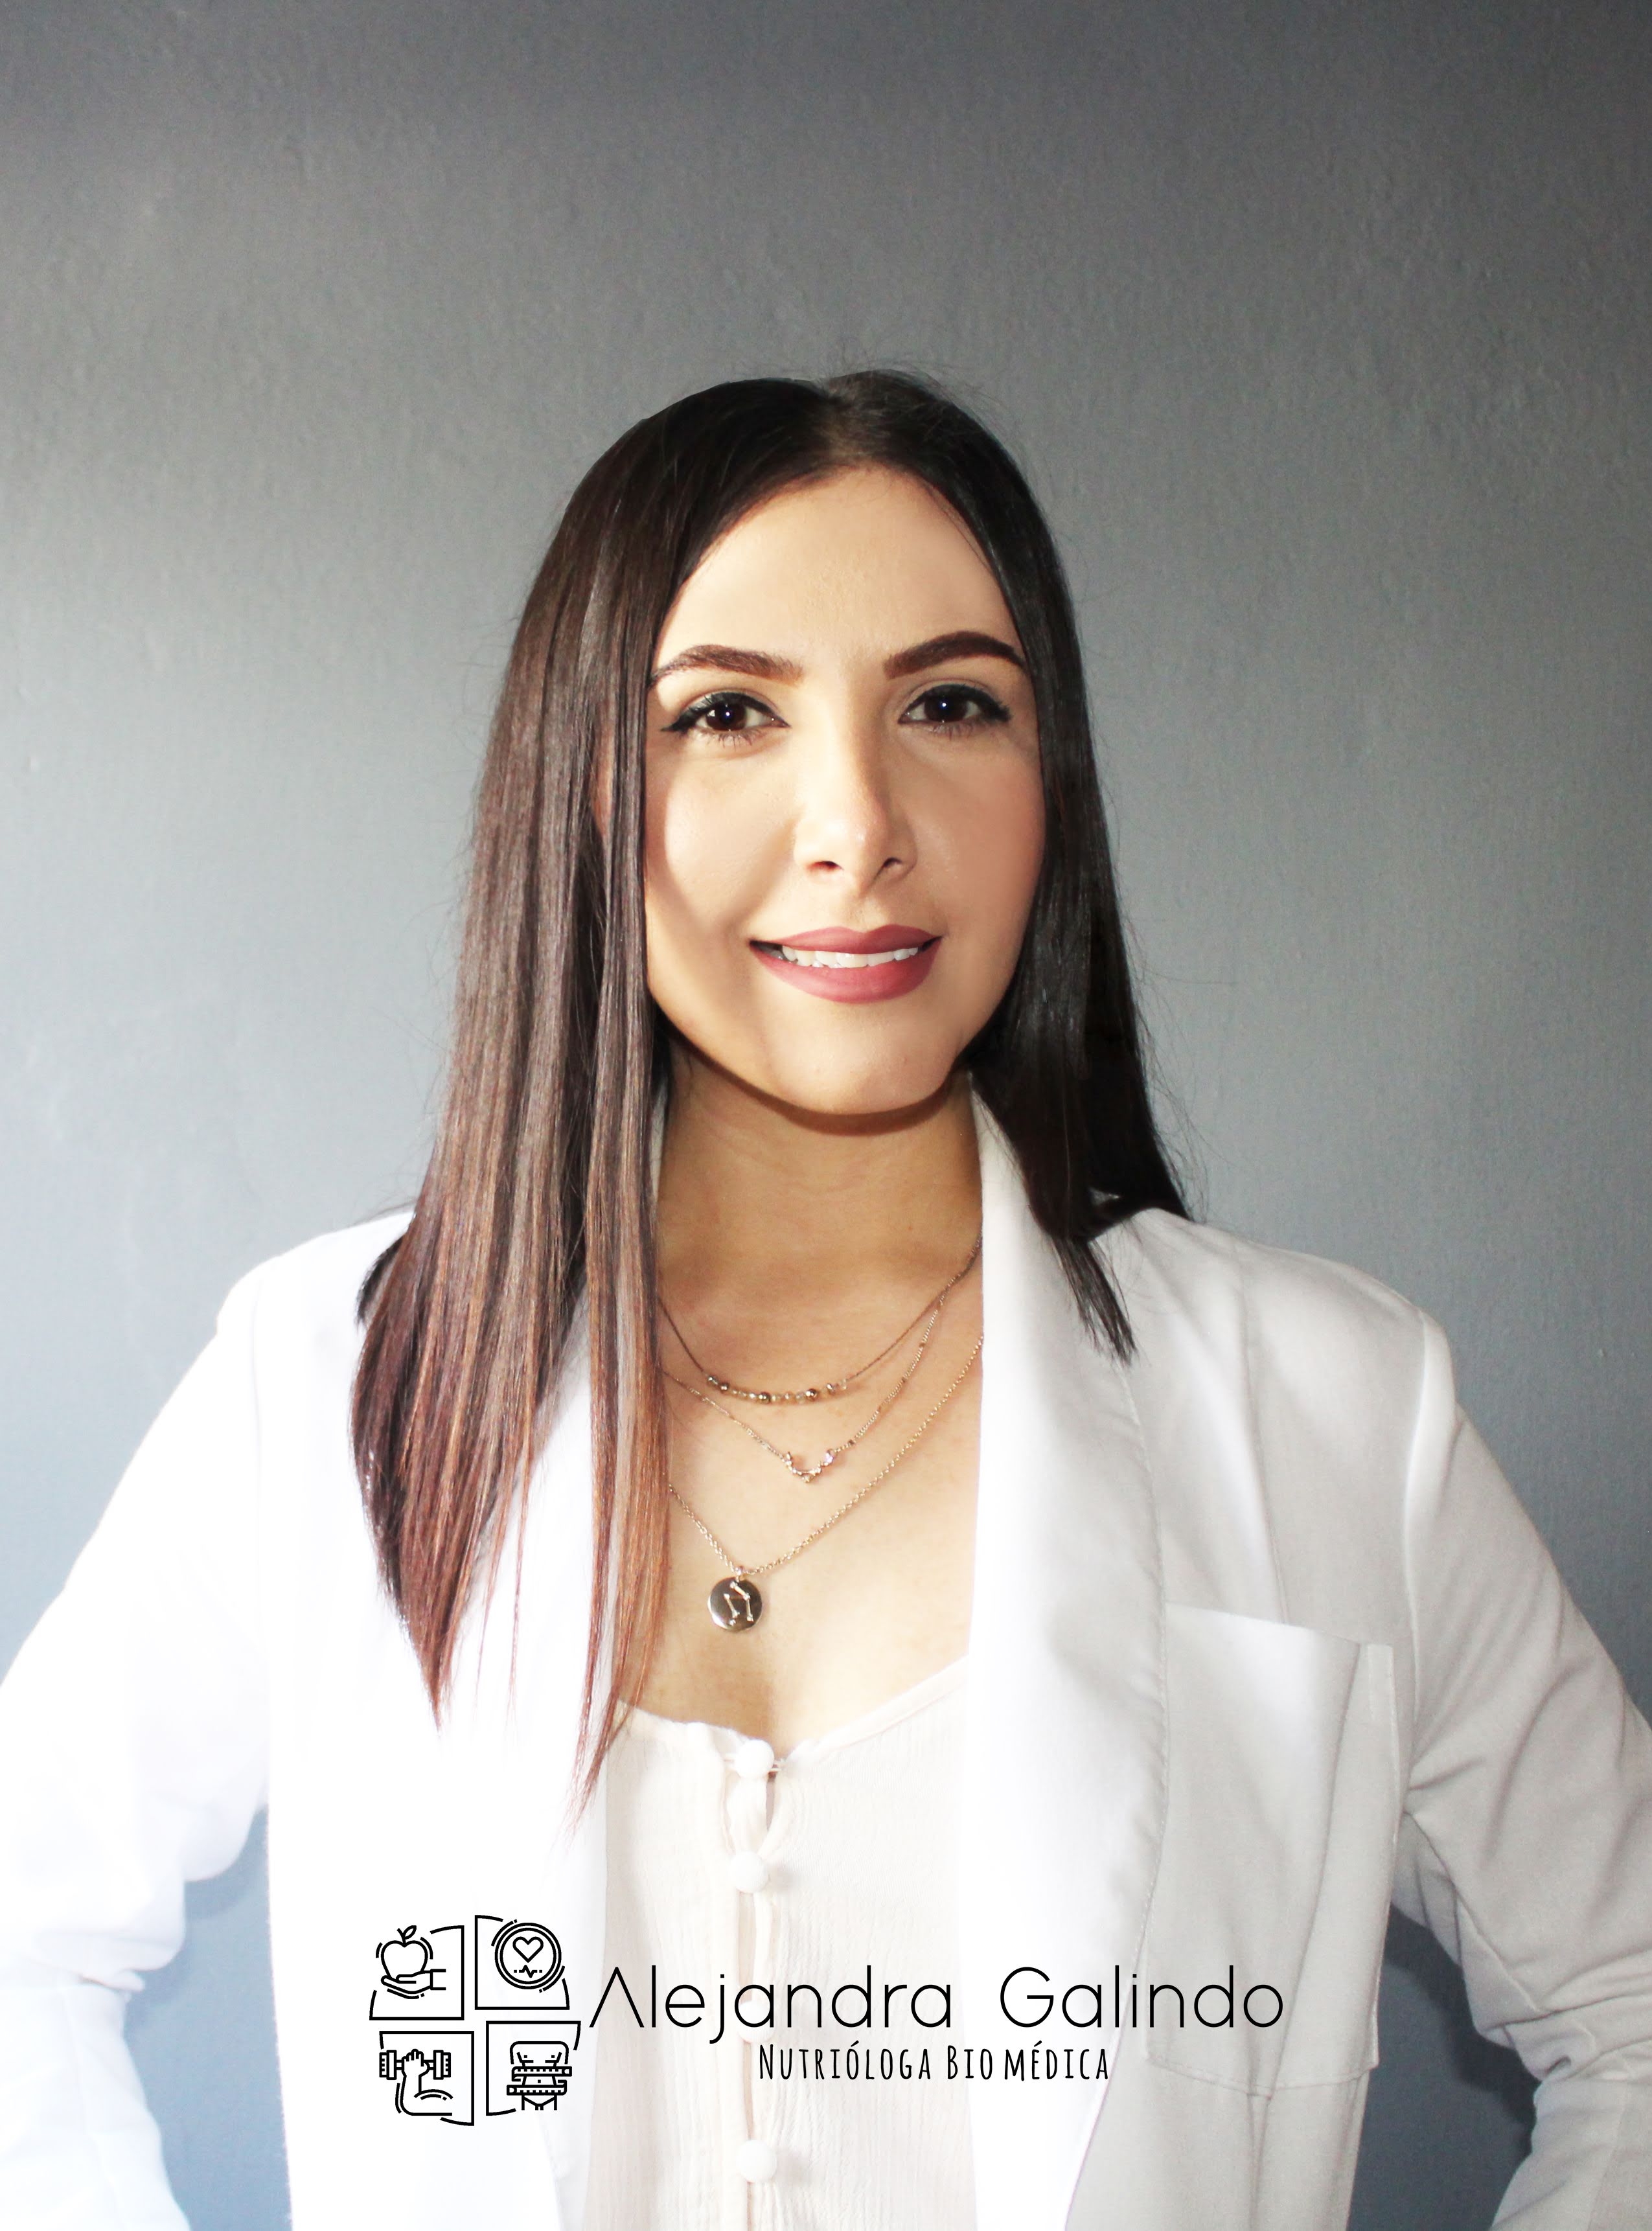 María Alejandra Galindo Cáceres Nutrióloga/Maestra en ciencias biomédicas